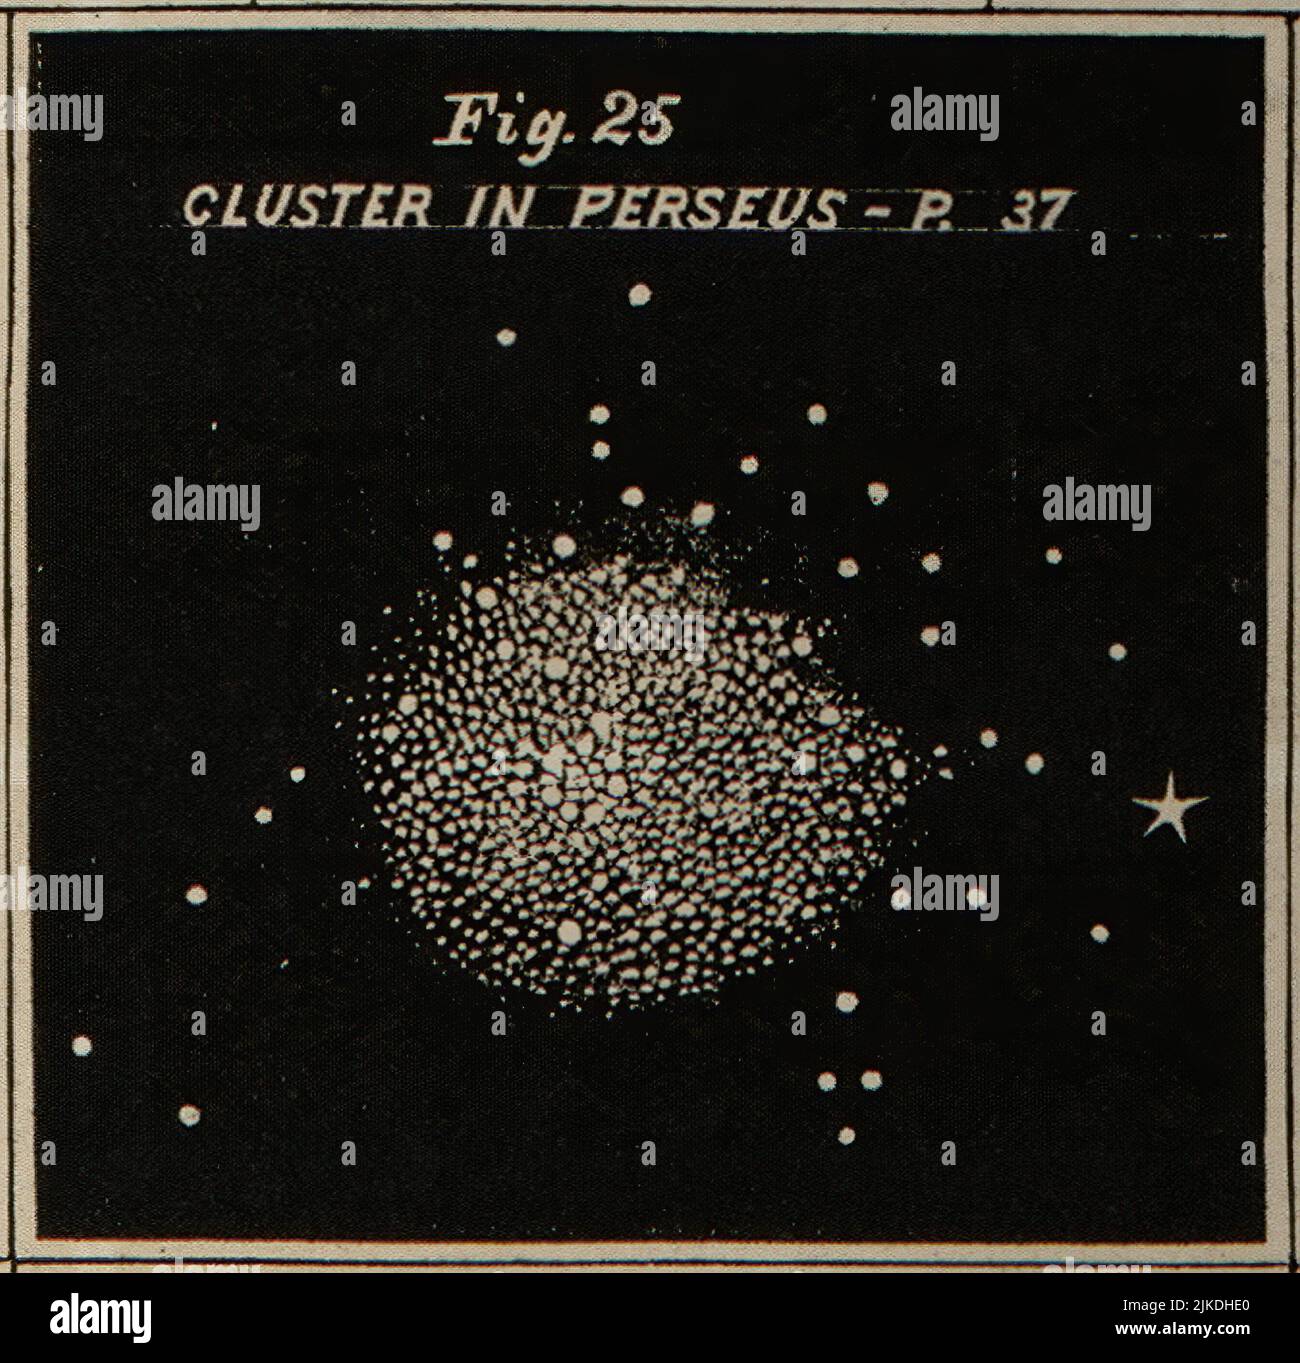 Sternhaufen in Perseus - Atlas entwickelt, um Burritts Geografie des Himmels zu illustrieren - Burritt, Elijah H. Doppelsterne und Sternhaufen. Cluster, nebulæ Stockfoto